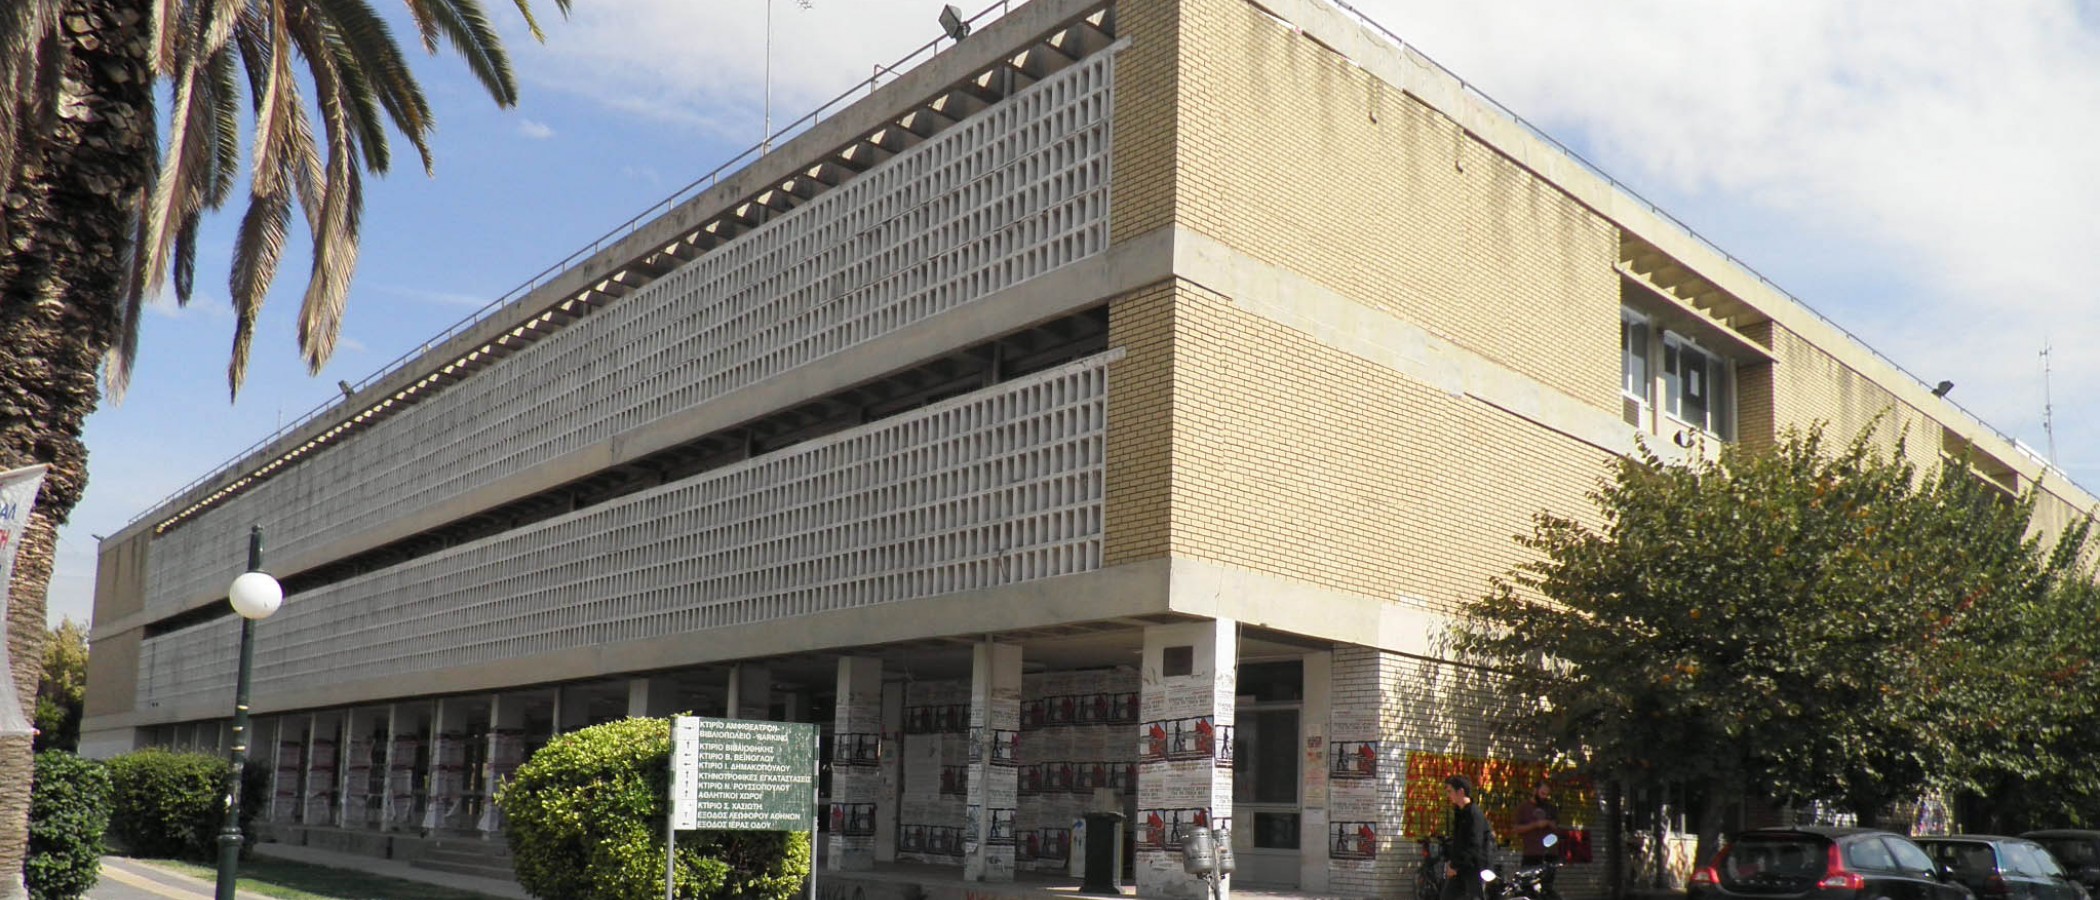 Σημαντική διάκριση για το Γεωπονικό Πανεπιστήμιο Αθηνών στην Ακαδημία Αθηνών